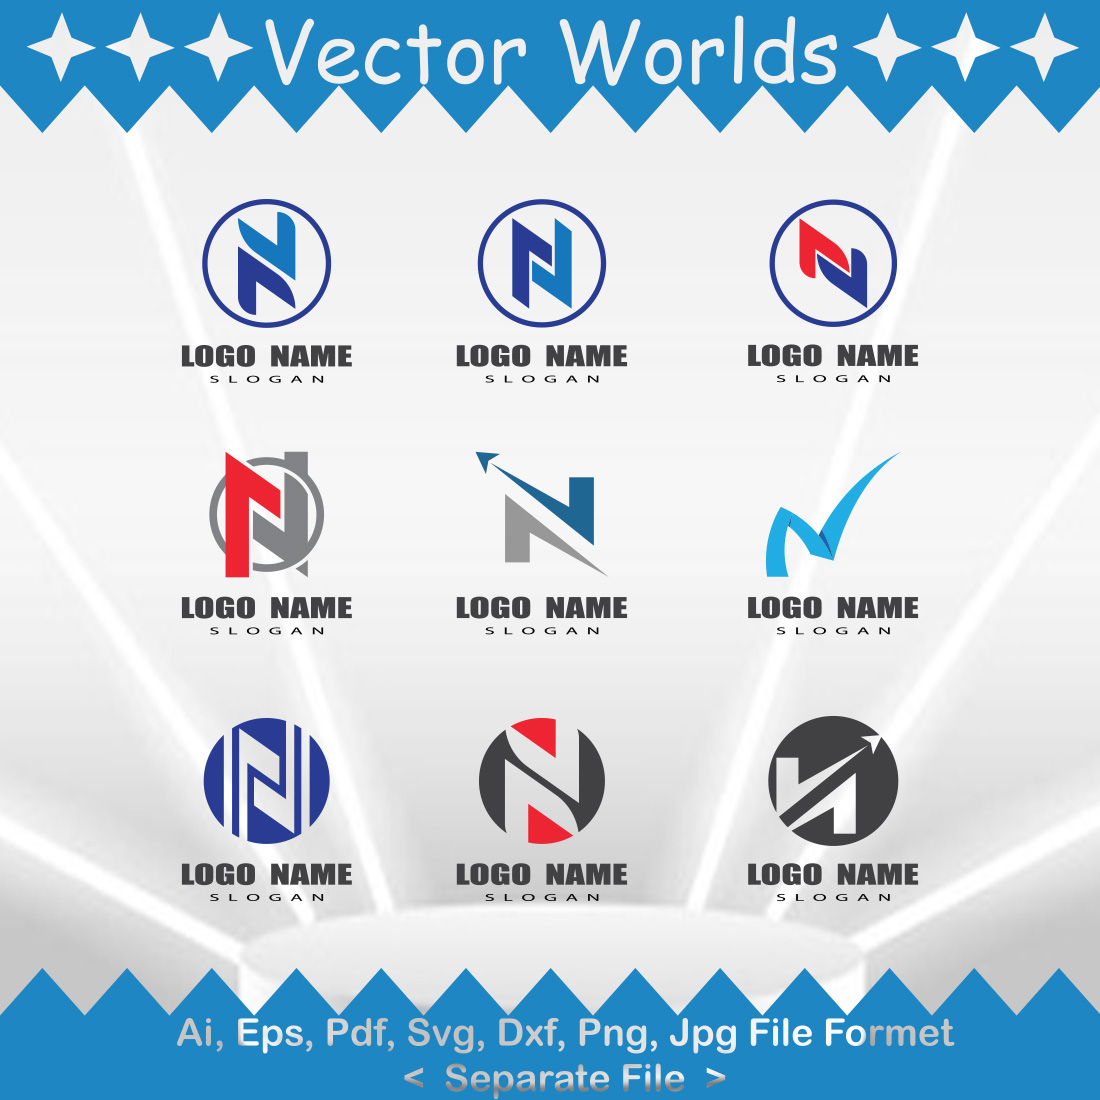 N Logo SVG Vector Design cover image.